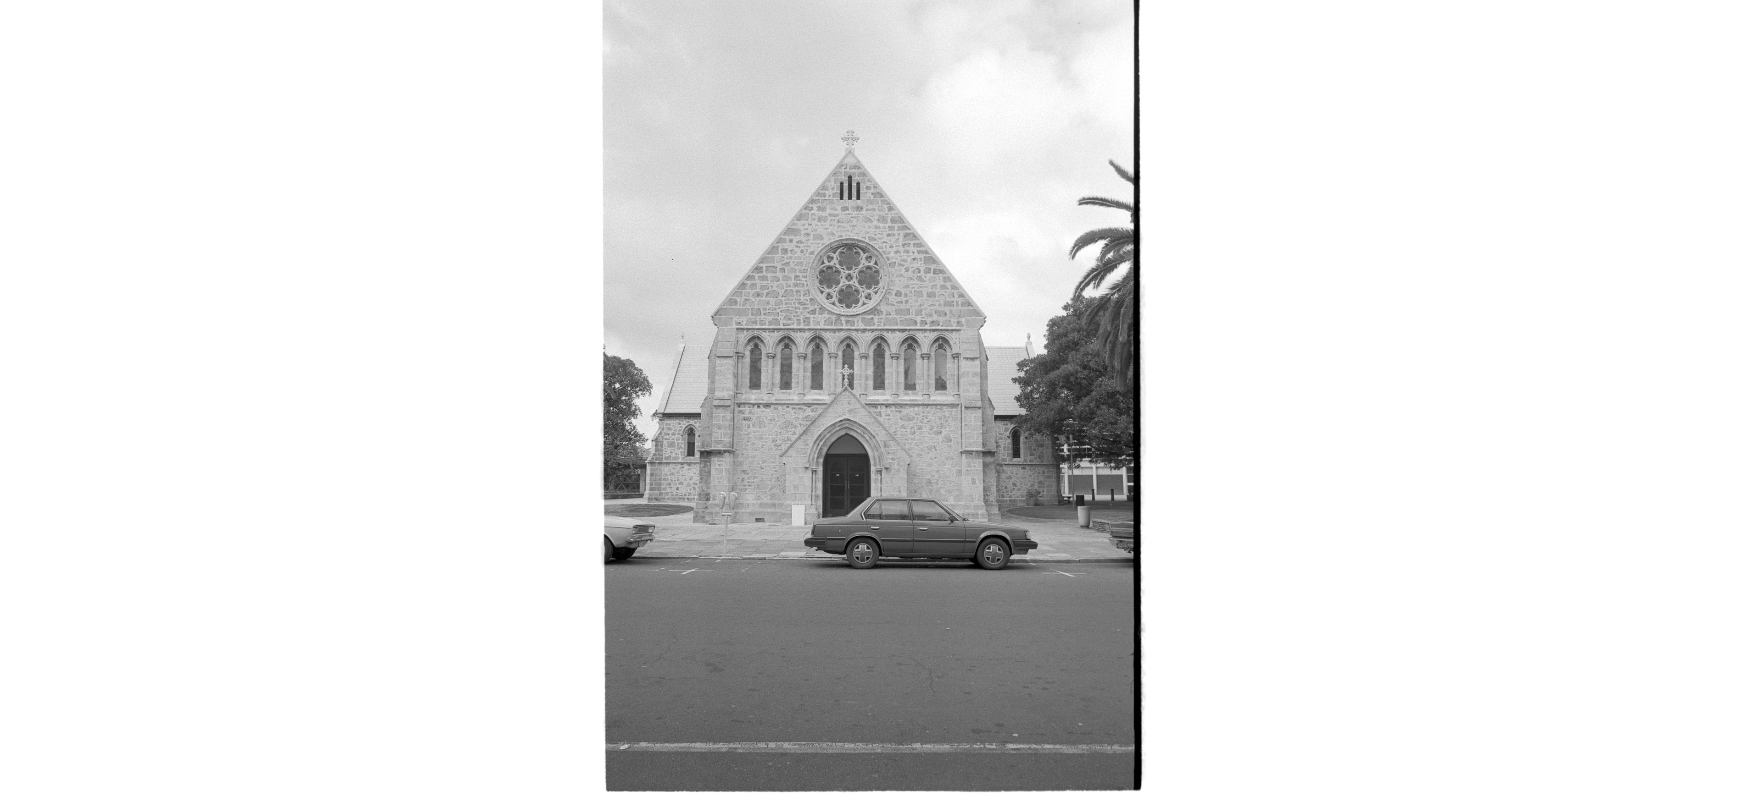 St Johns Church 1985